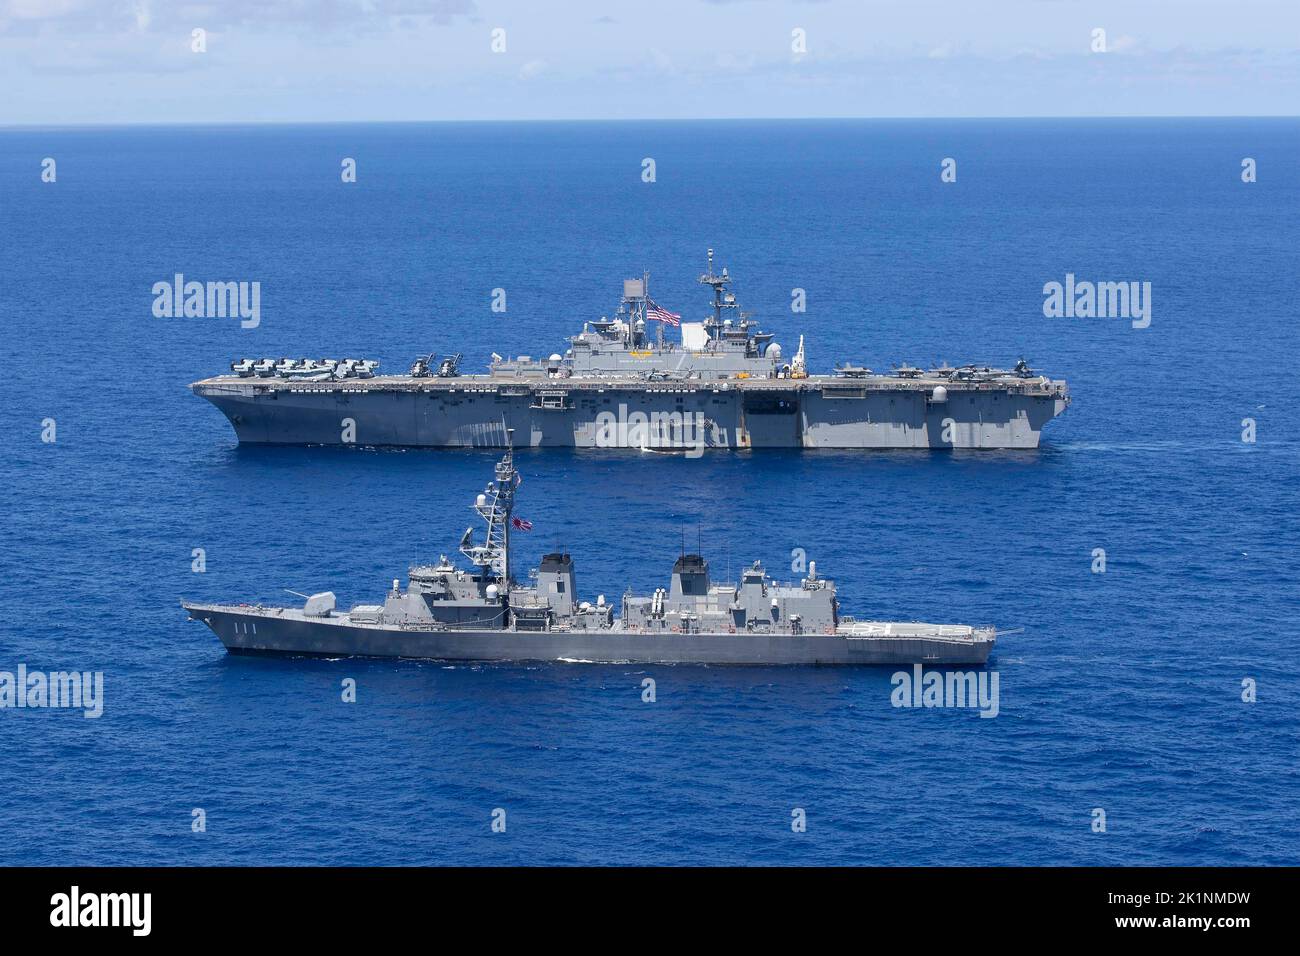 Mar de Filipinas, Estados Unidos. 23 de agosto de 2022. El buque de asalto anfibio USS Trípoli, TOP, de la Armada de los Estados Unidos, navega junto al destructor JS Ohnami de la Fuerza de Autodefensa Marítima de Japón, clase Takanami, durante una operación de entrenamiento, el 23 de agosto de 2022 en el Mar de Filipinas. Crédito: MC2 Malcolm Kelley/U.S. Foto Marina/Alamy Live News Foto de stock